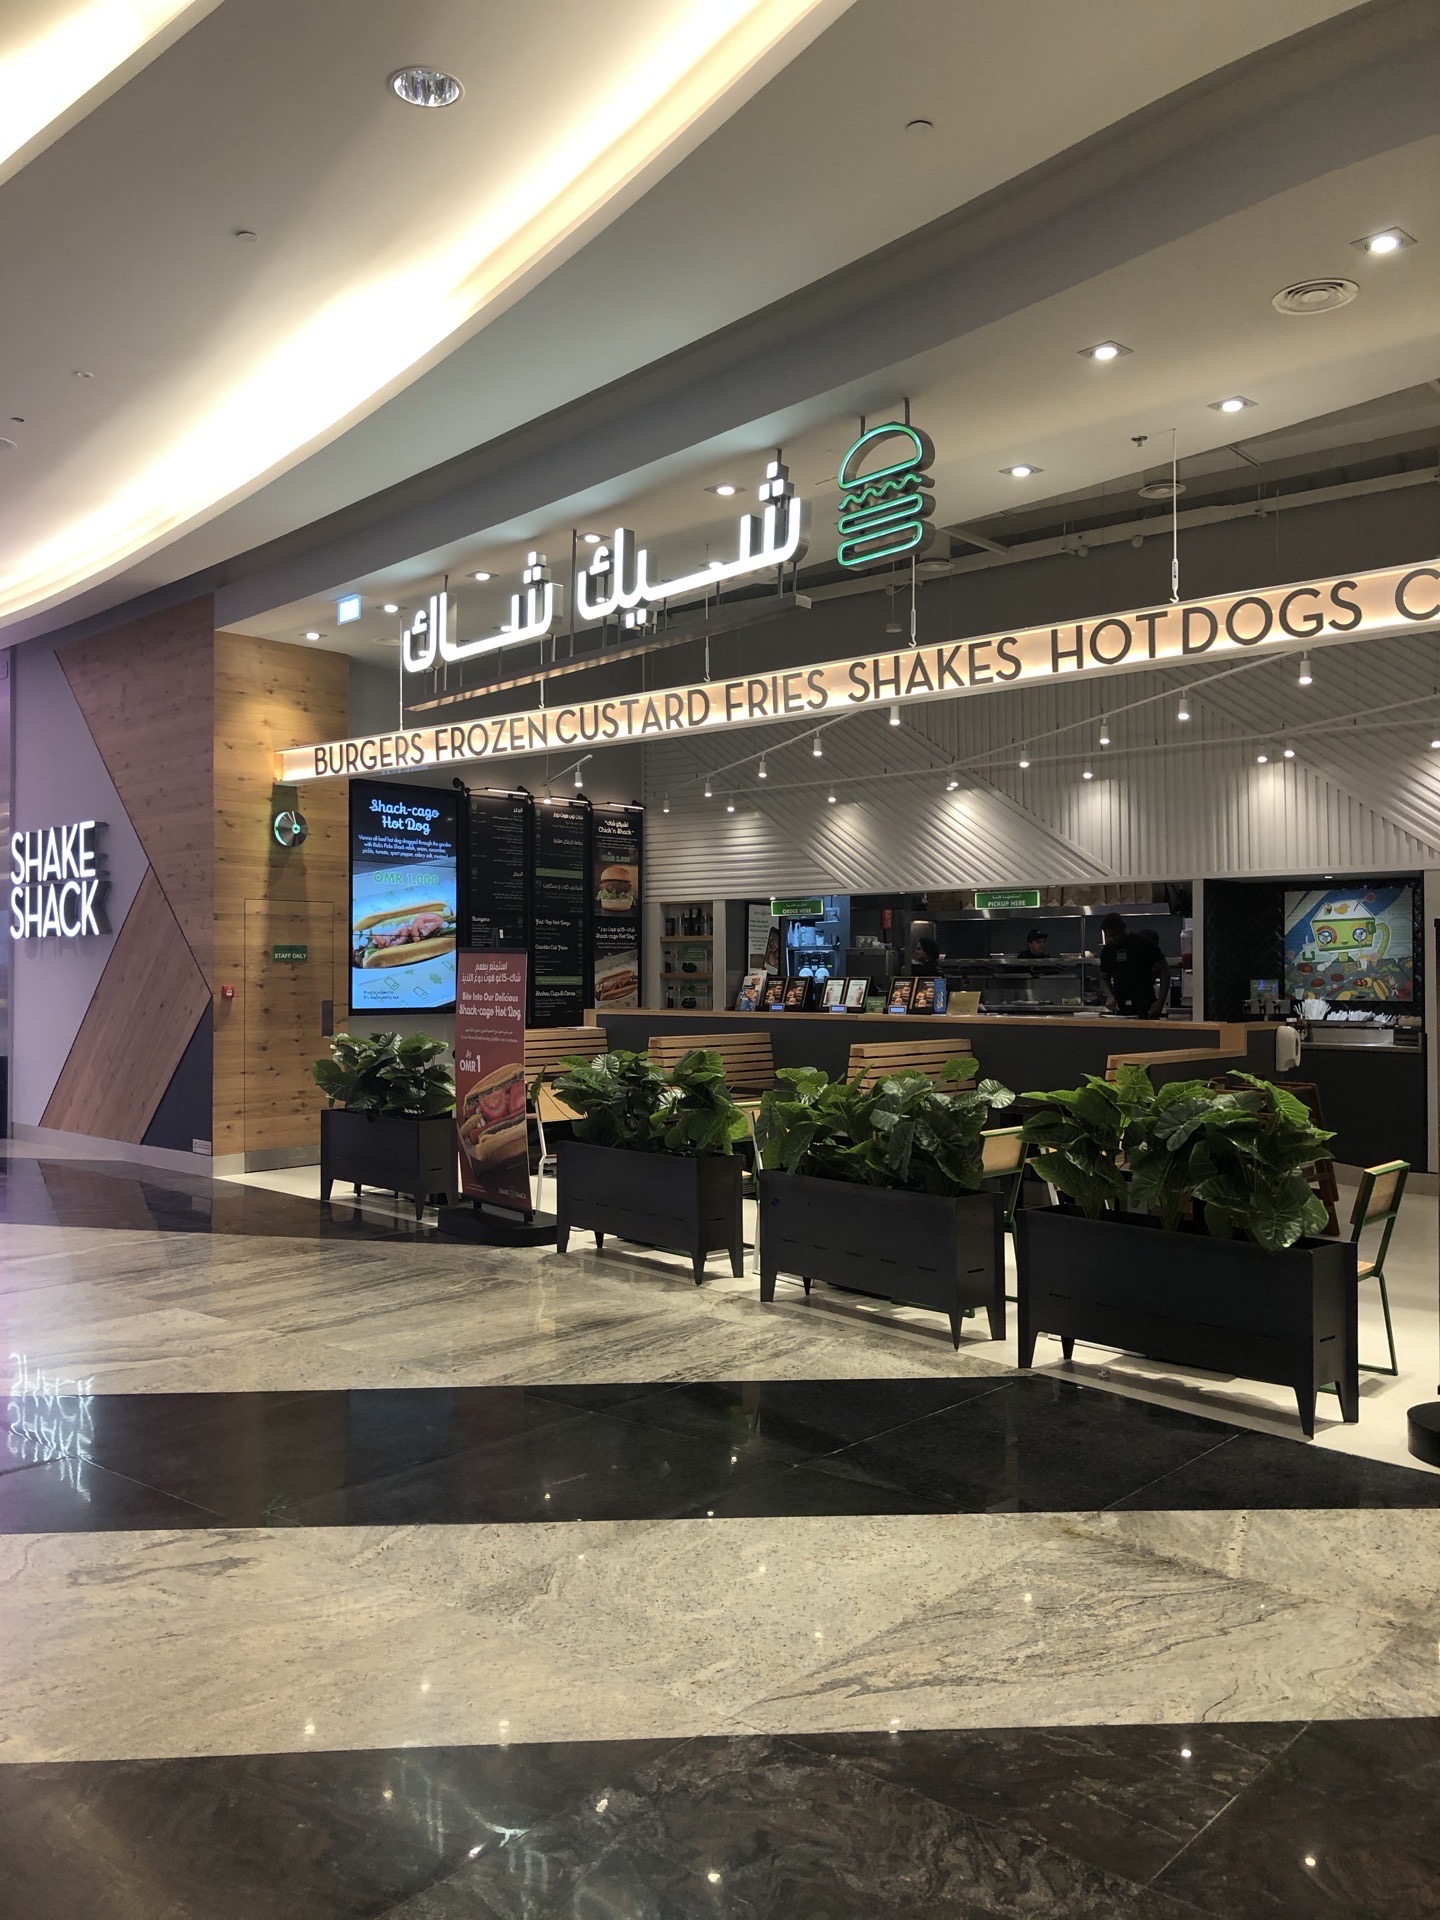 汉堡🍔🍔🍔🍔 薯条 🍟🍟🍟🍟 热狗🌭🌭🌭🌭 都好好吃的店。——Mall of Muscat